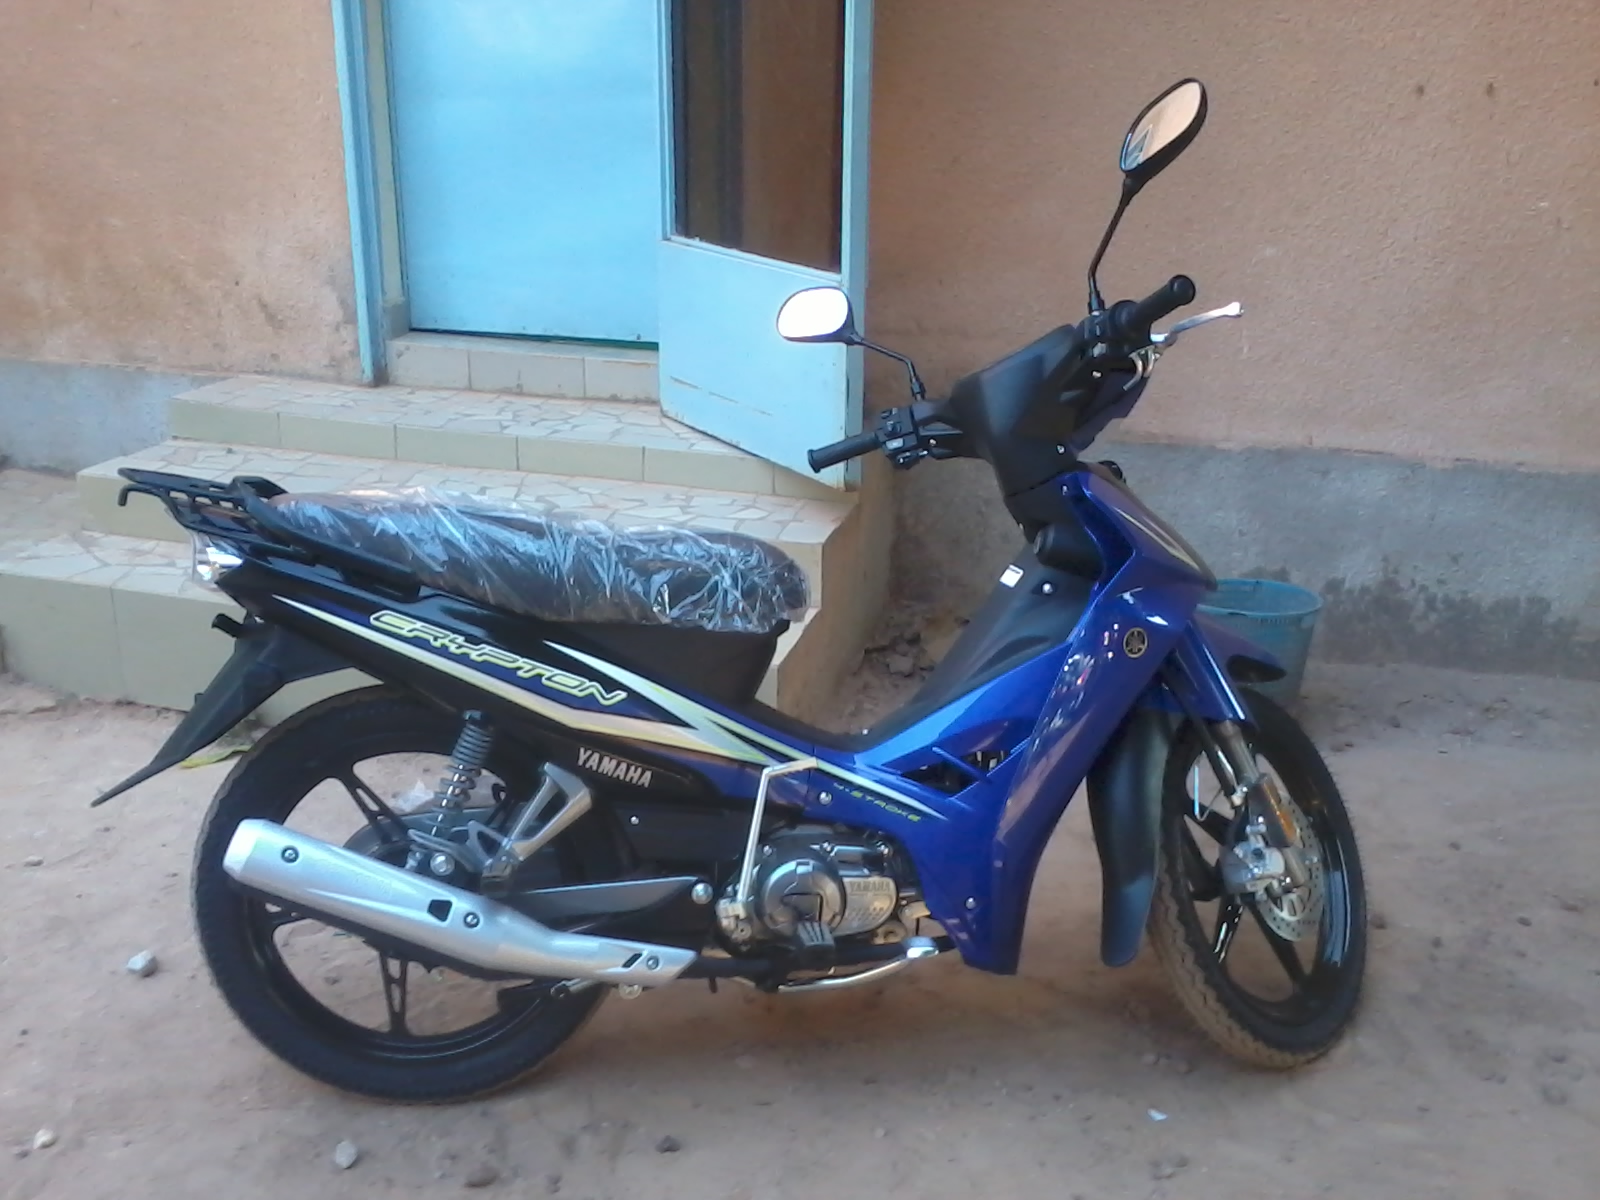 My new moto!